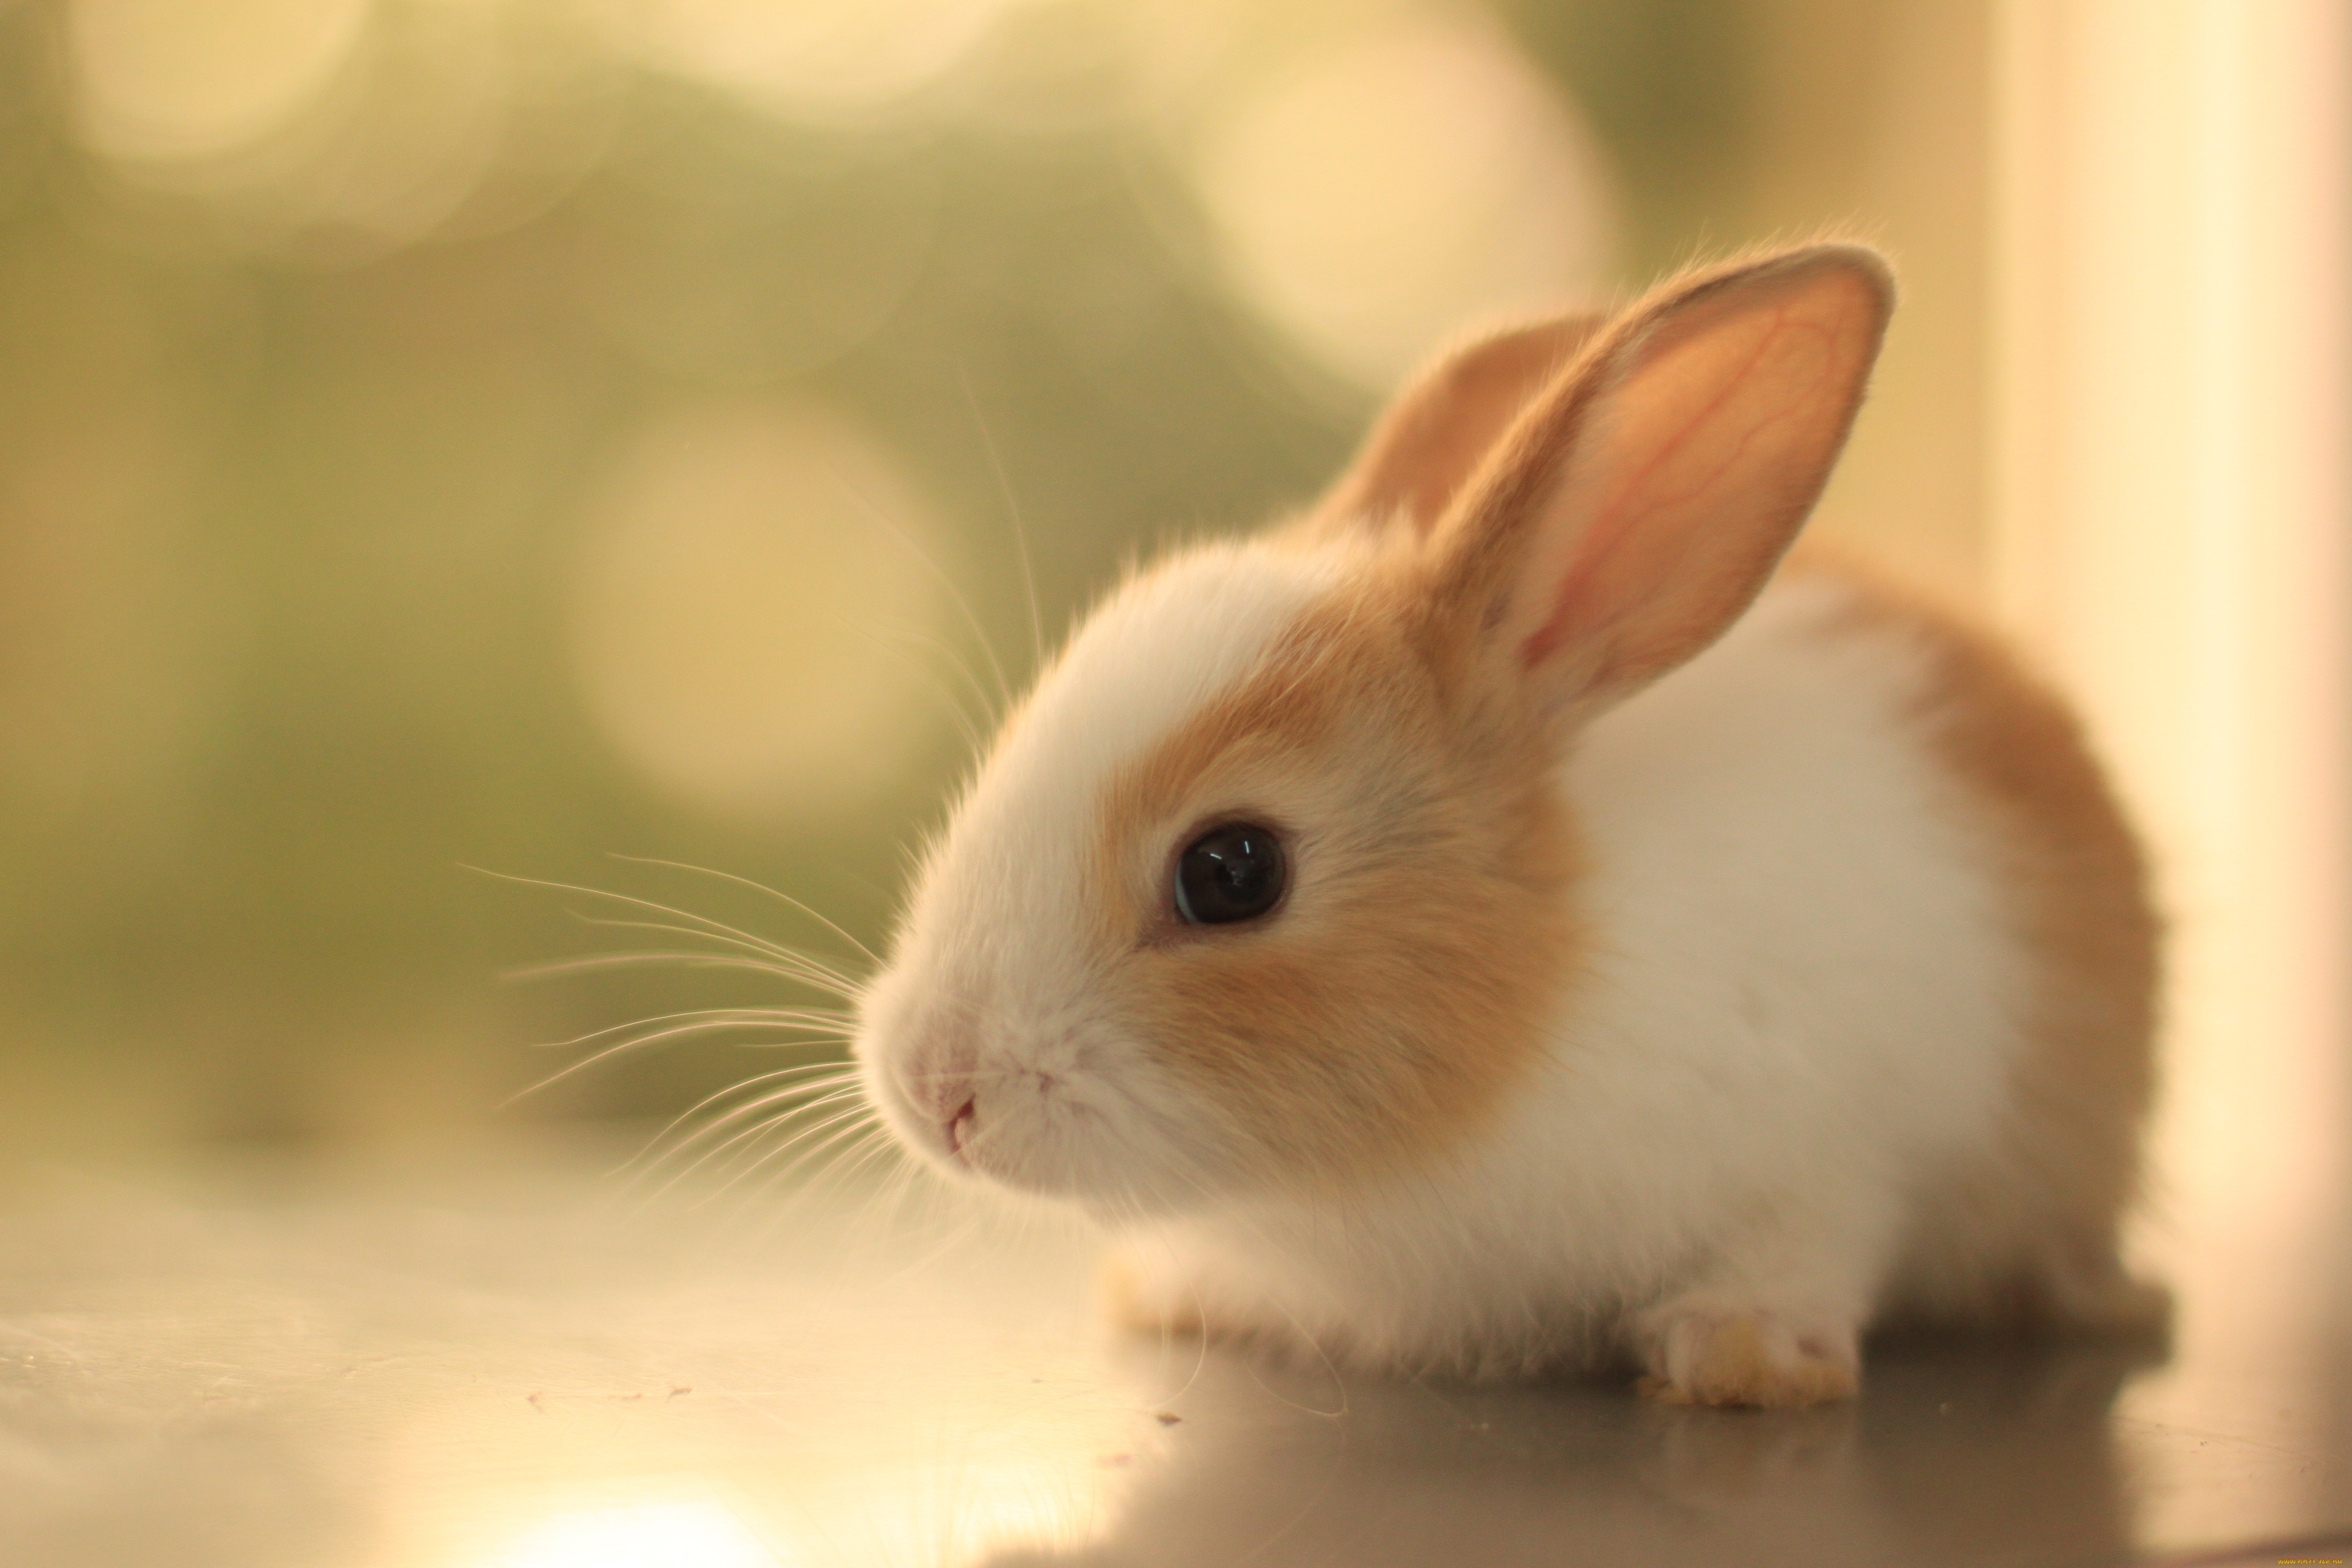 Cute teen picture. Бунни рэббит. Красивый кролик. Милые зверьки. Животные кролики.